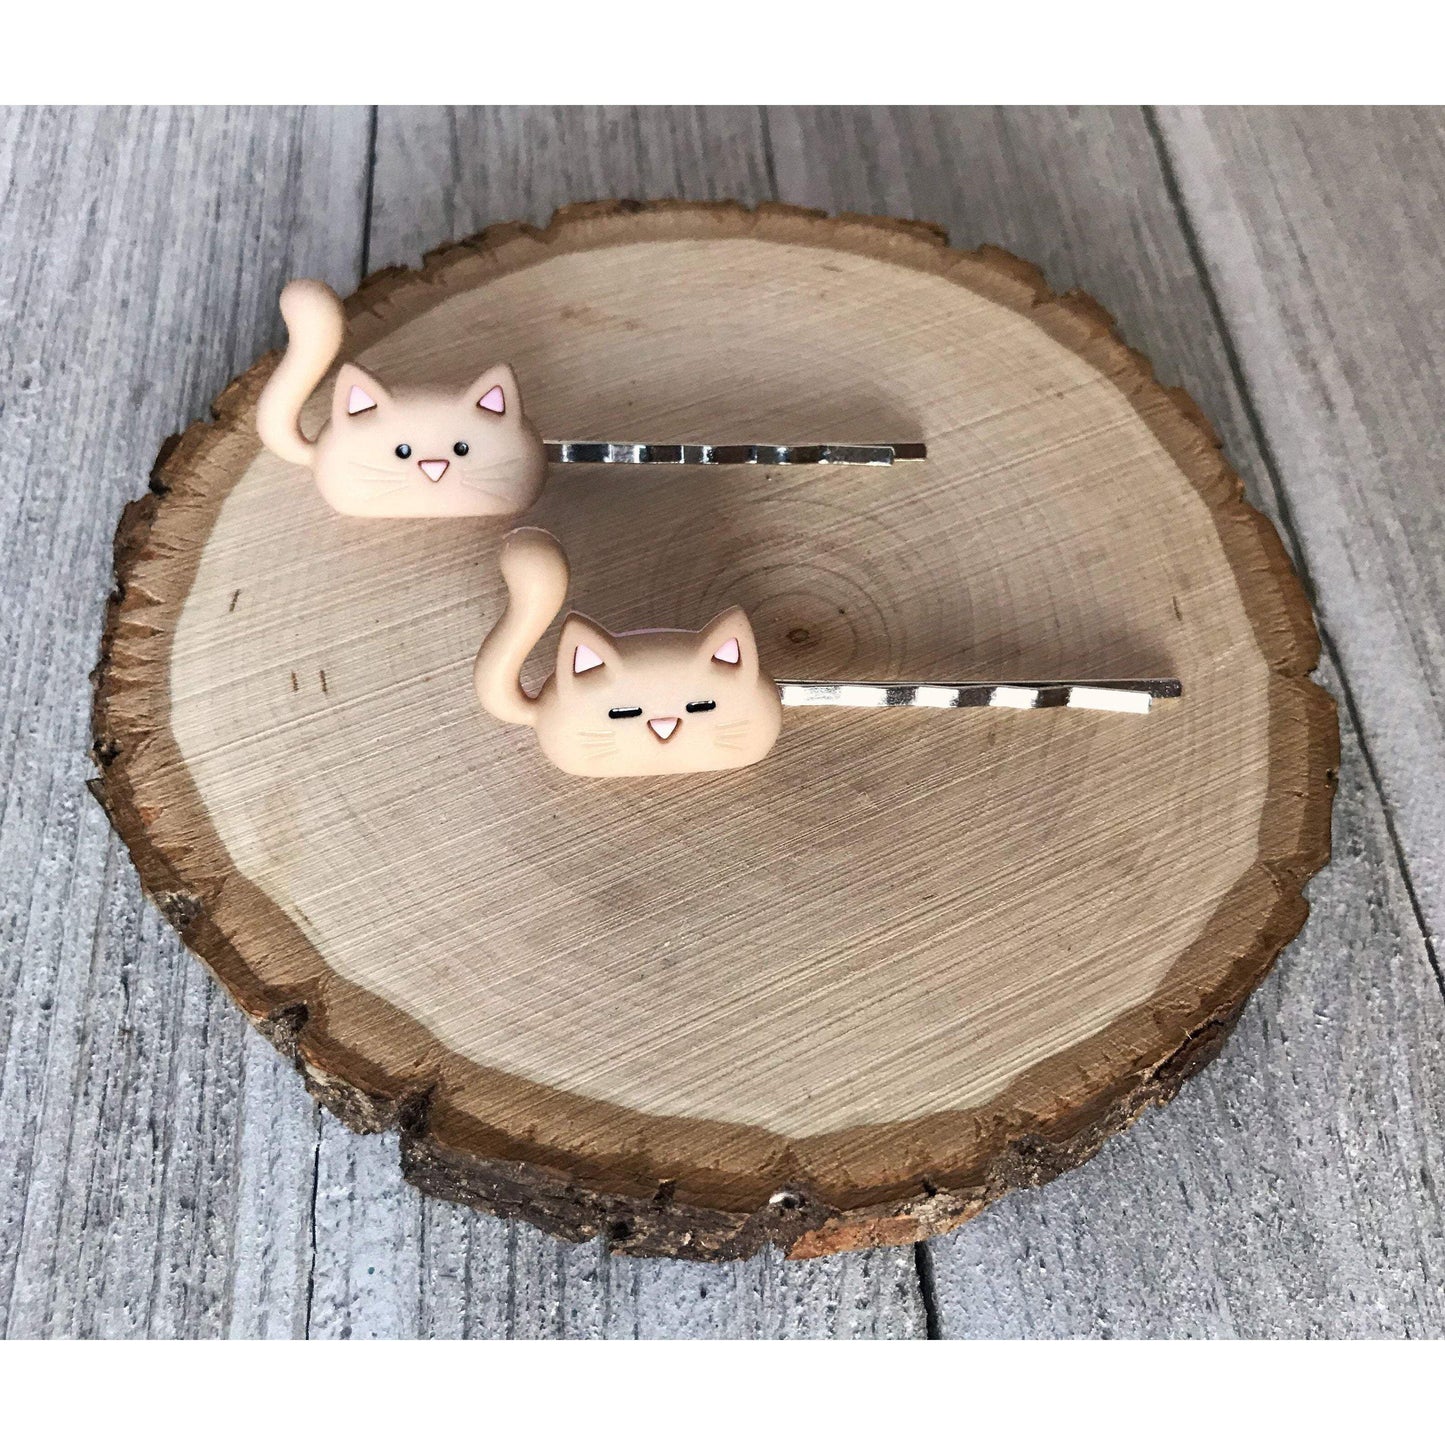 Tan Cat Hair Pins - Cute Hair Accessories for Feline Fans